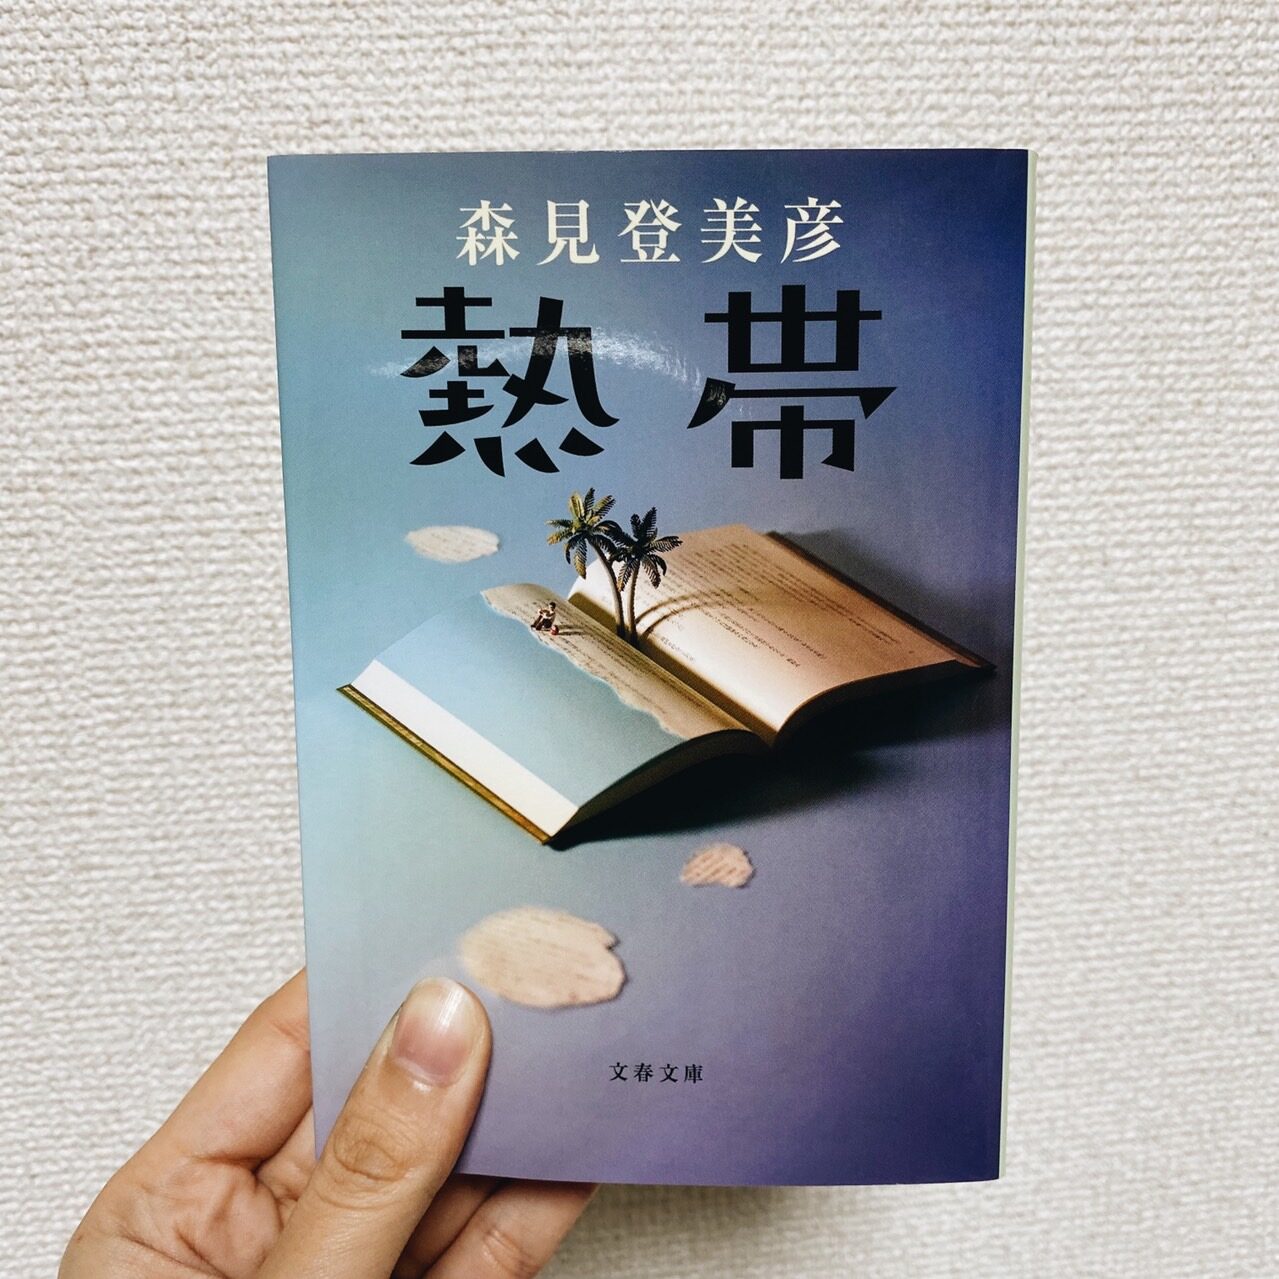 morimitomihiko-nettai-book